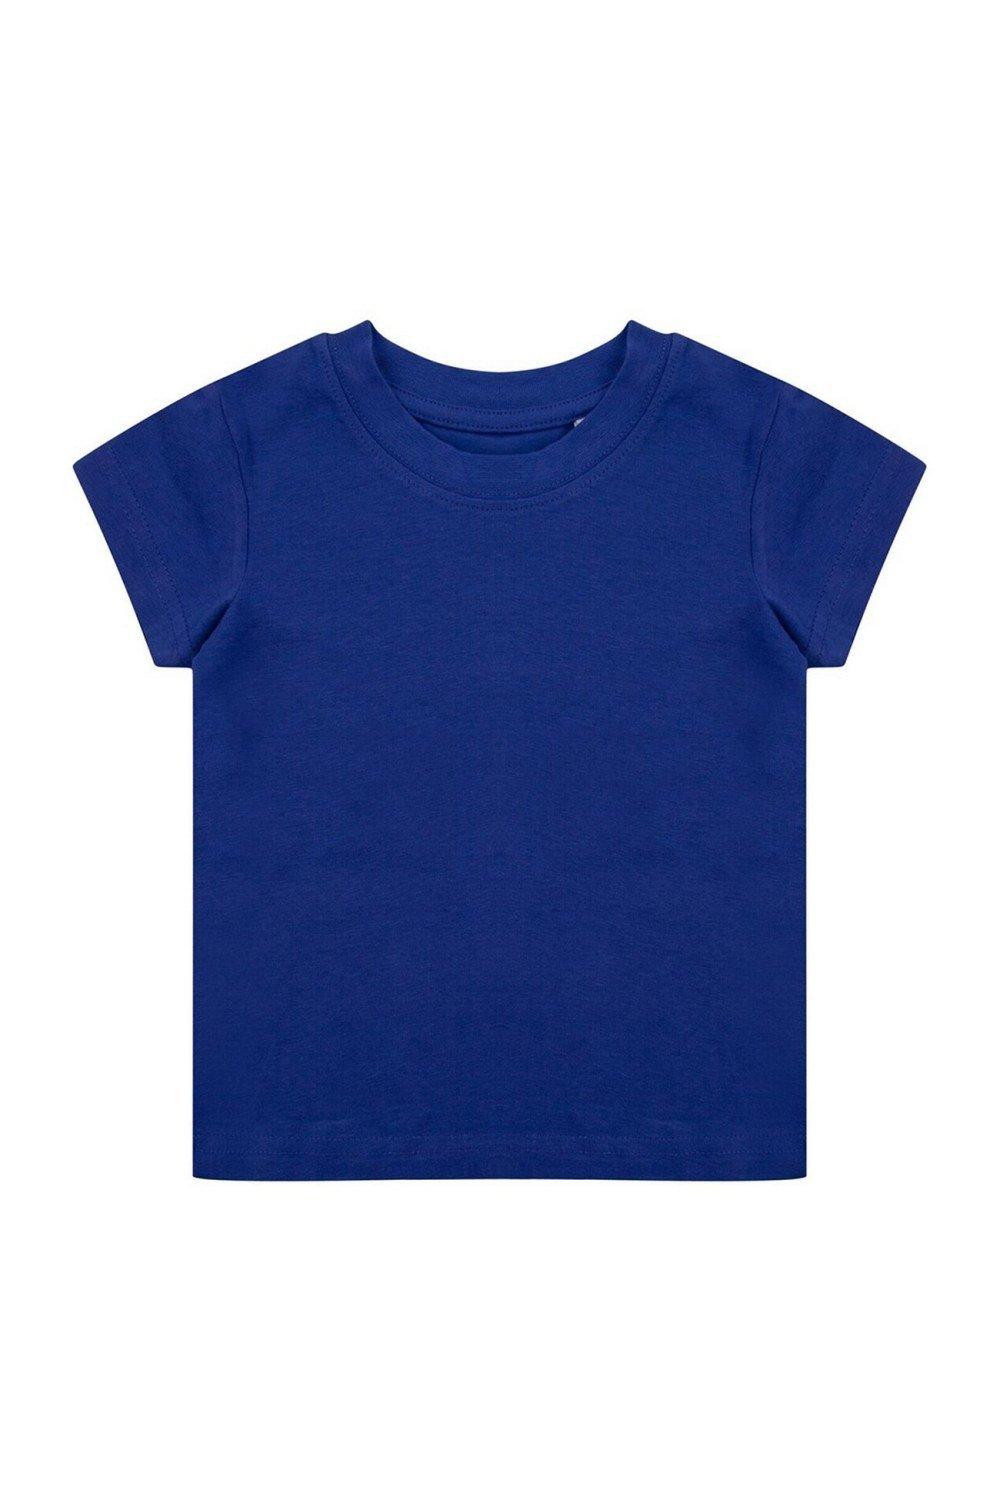 Органическая футболка Larkwood, синий костюм размер 6 мес